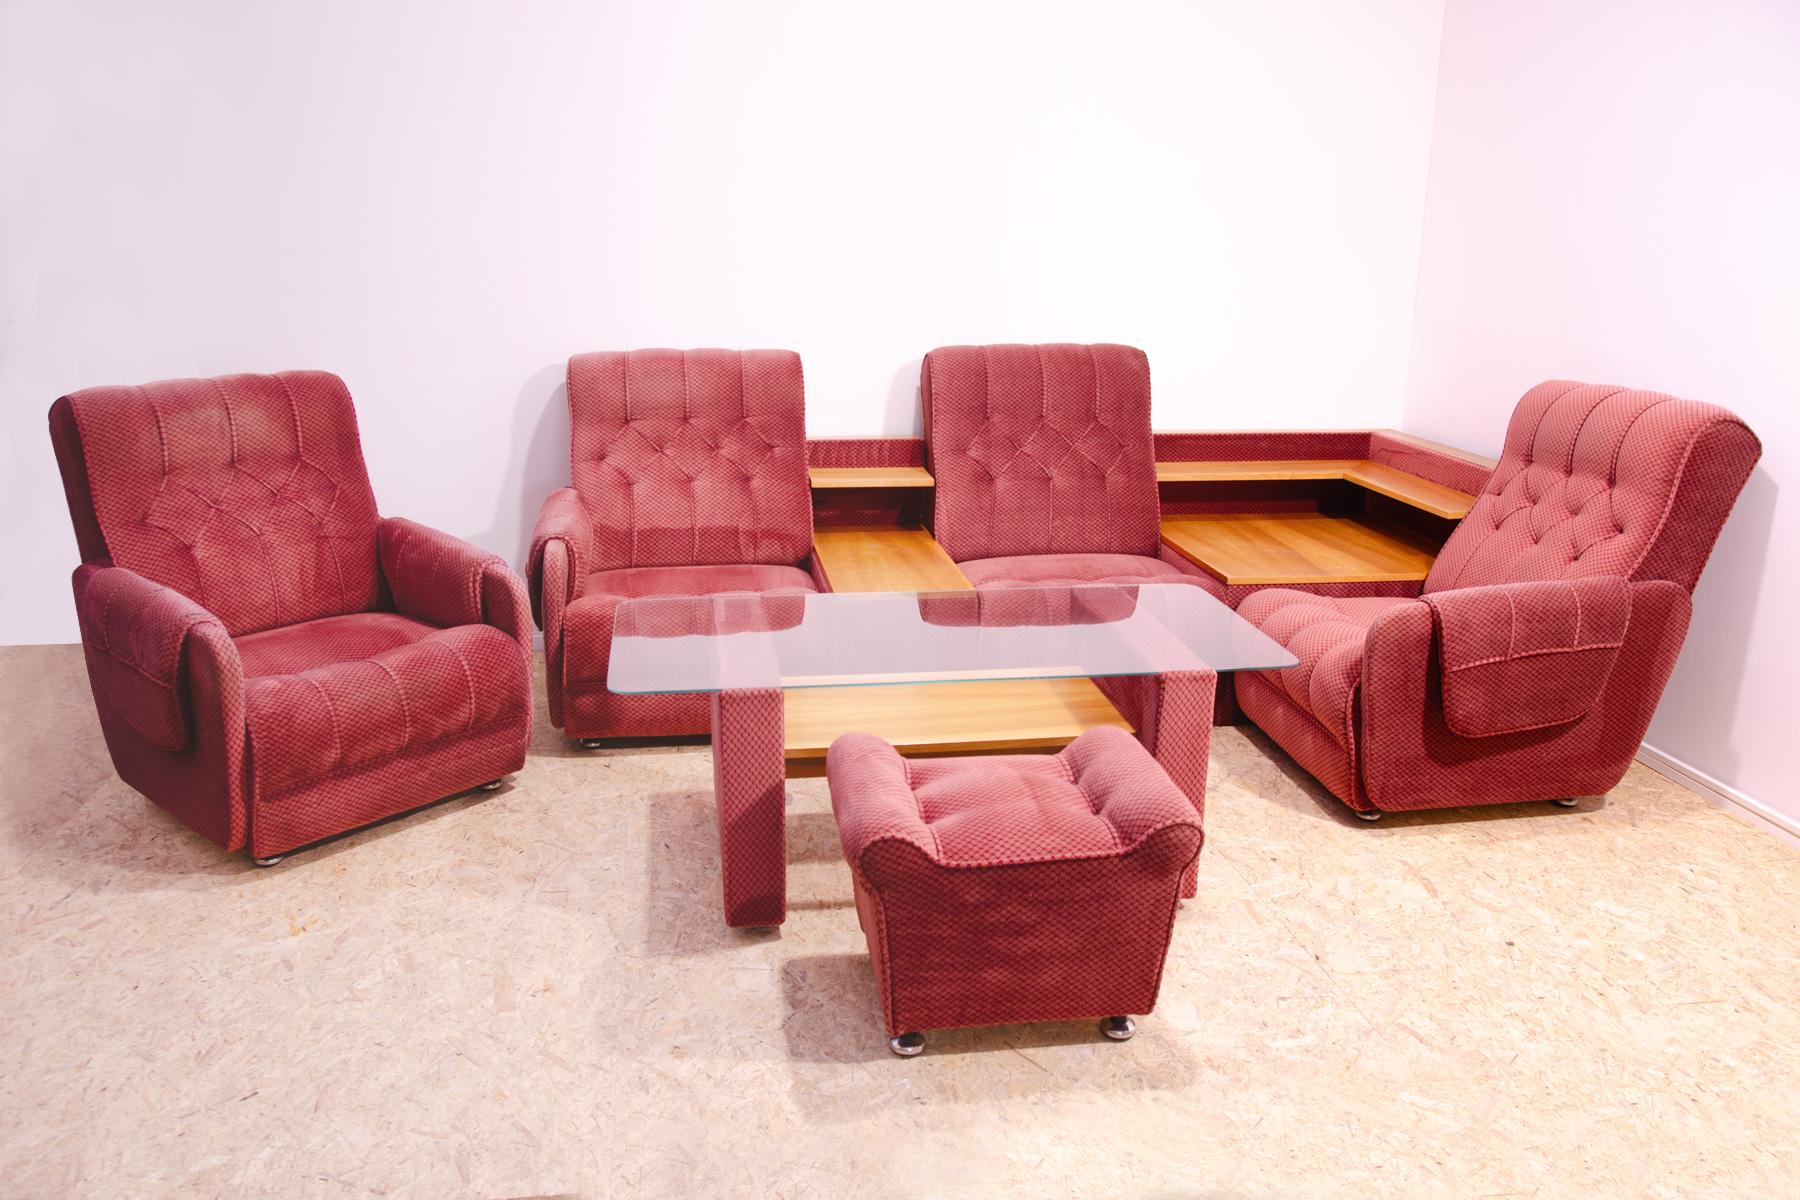 Cet ensemble de salon vintage est un exemple typique du Living Design des années 1970/1980 dans l'ancienne Tchécoslovaquie.

Le mobilier est très confortable.
Il se compose de quatre fauteuils reliés entre eux, d'un côté en bois qui sert de table